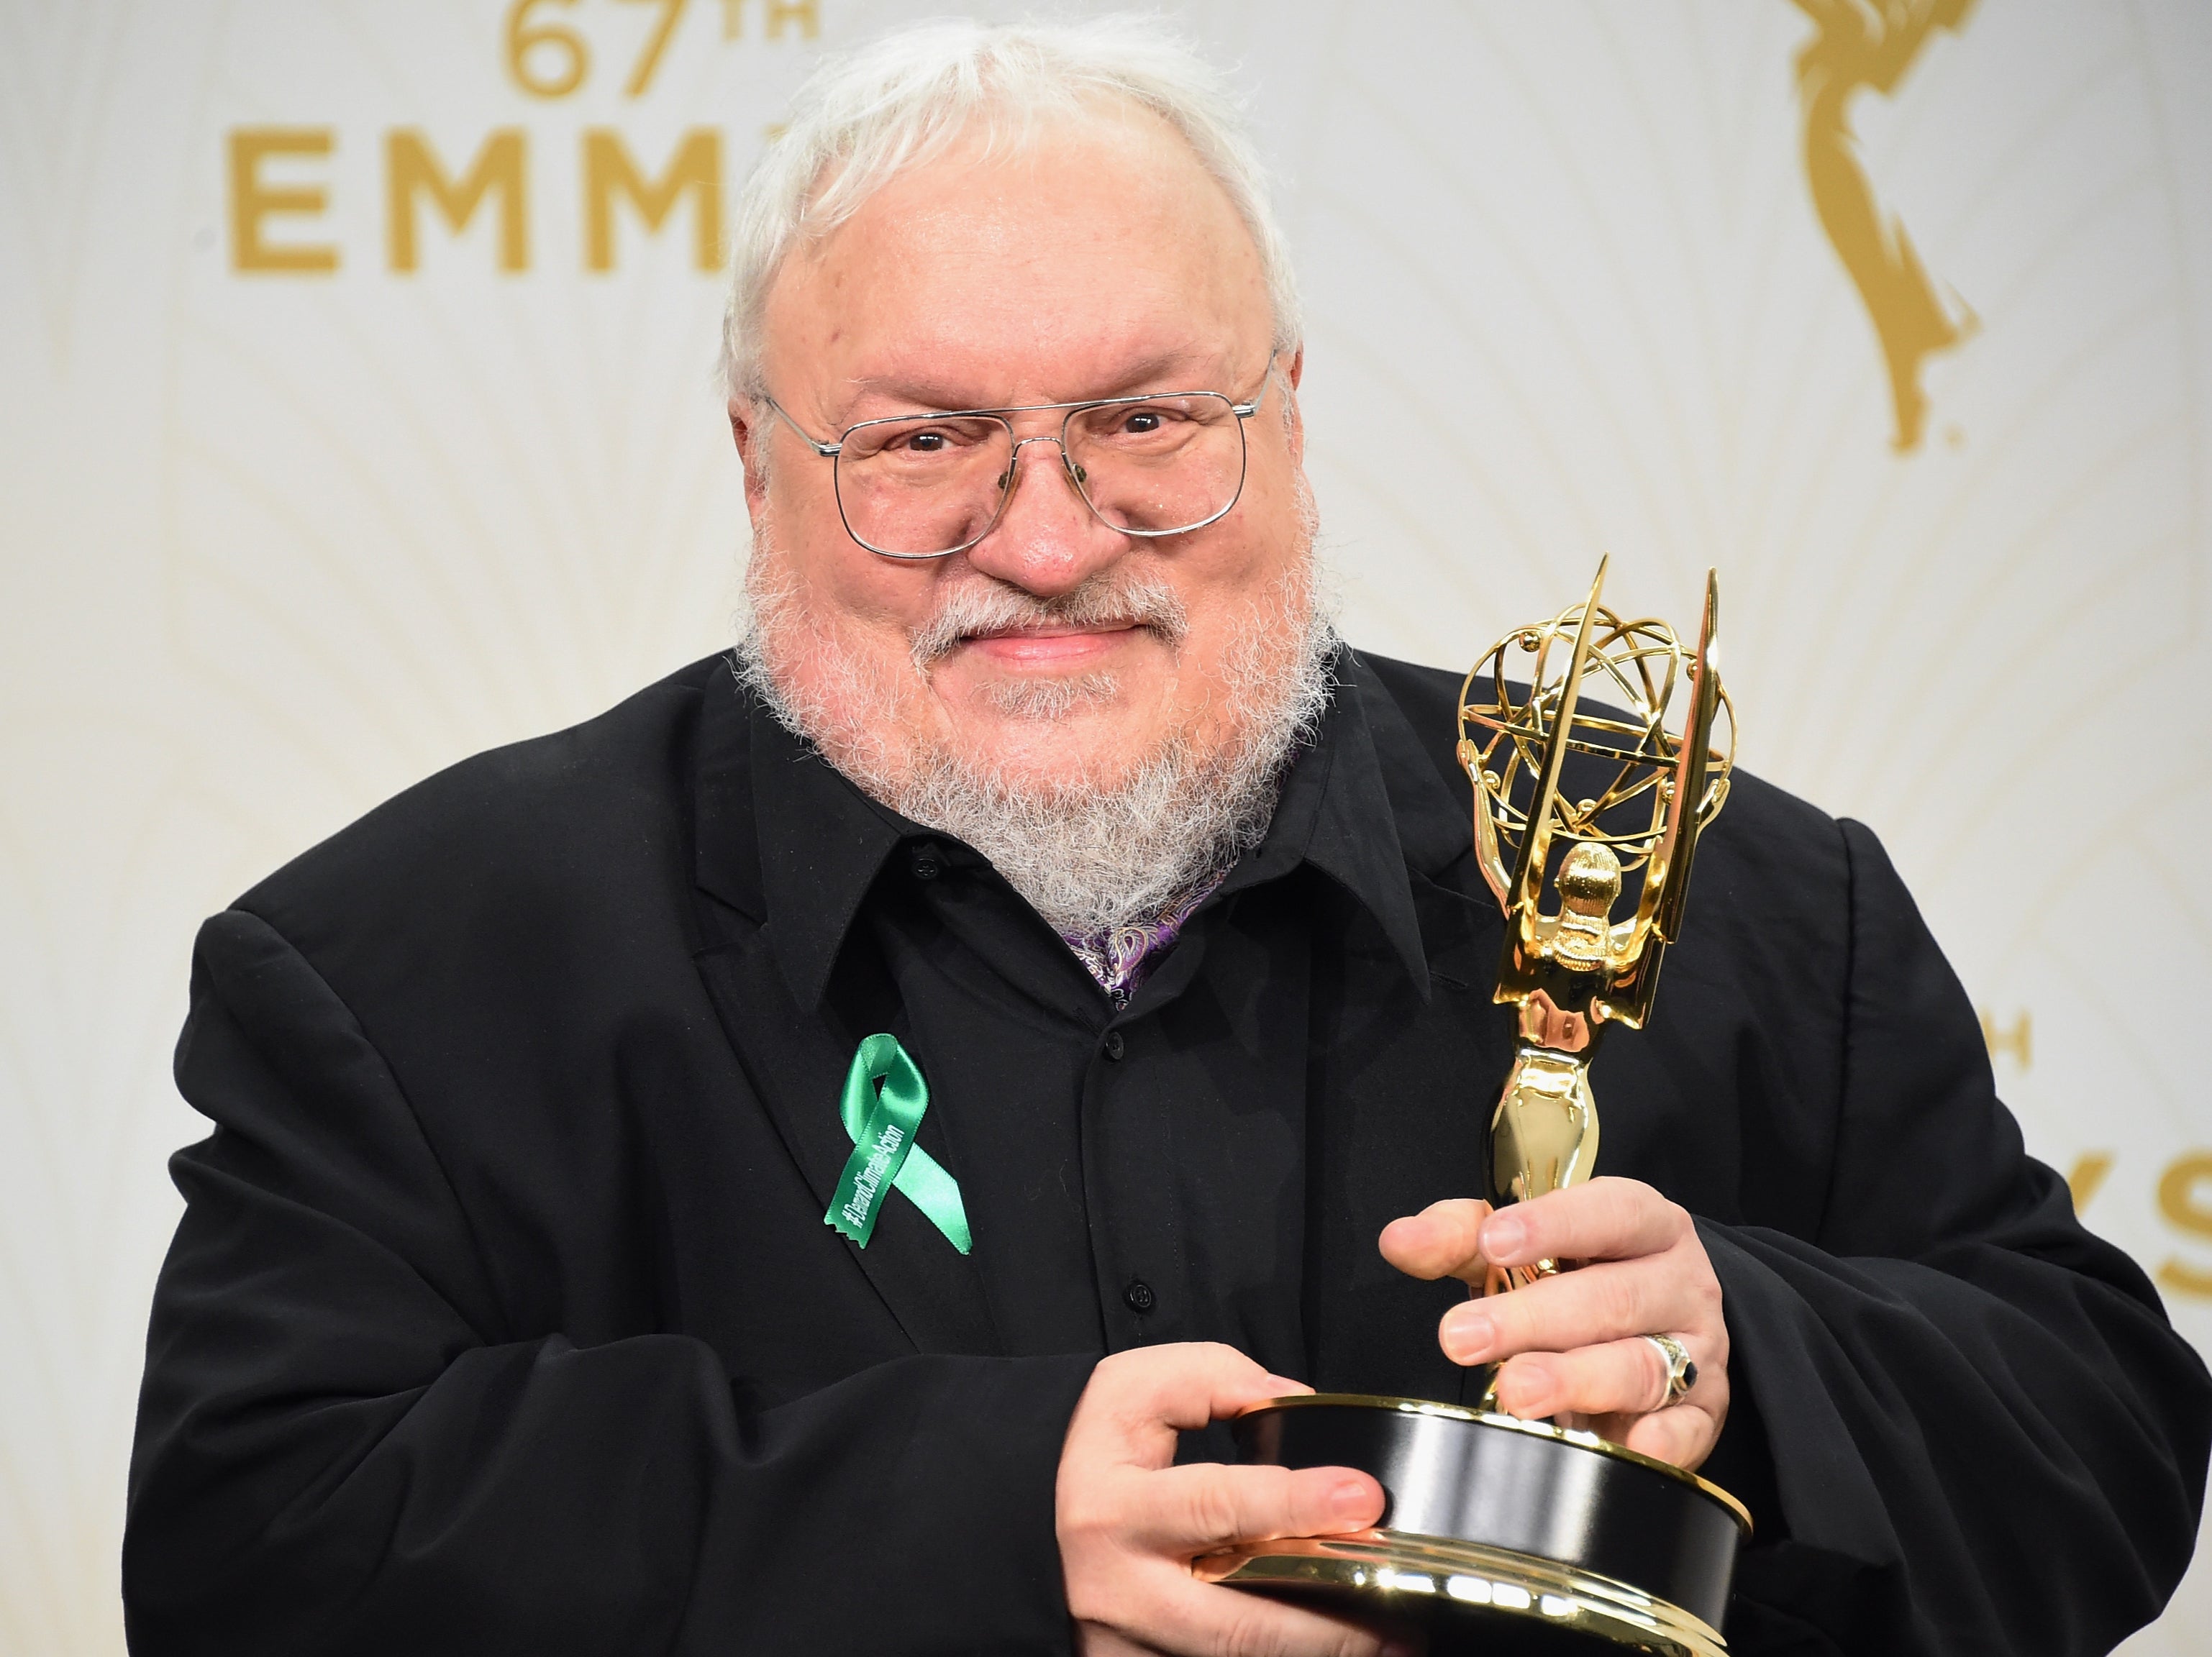 Martin sostiene en alto el Emmy a la mejor serie dramática concedido a Game of Thrones en 2015